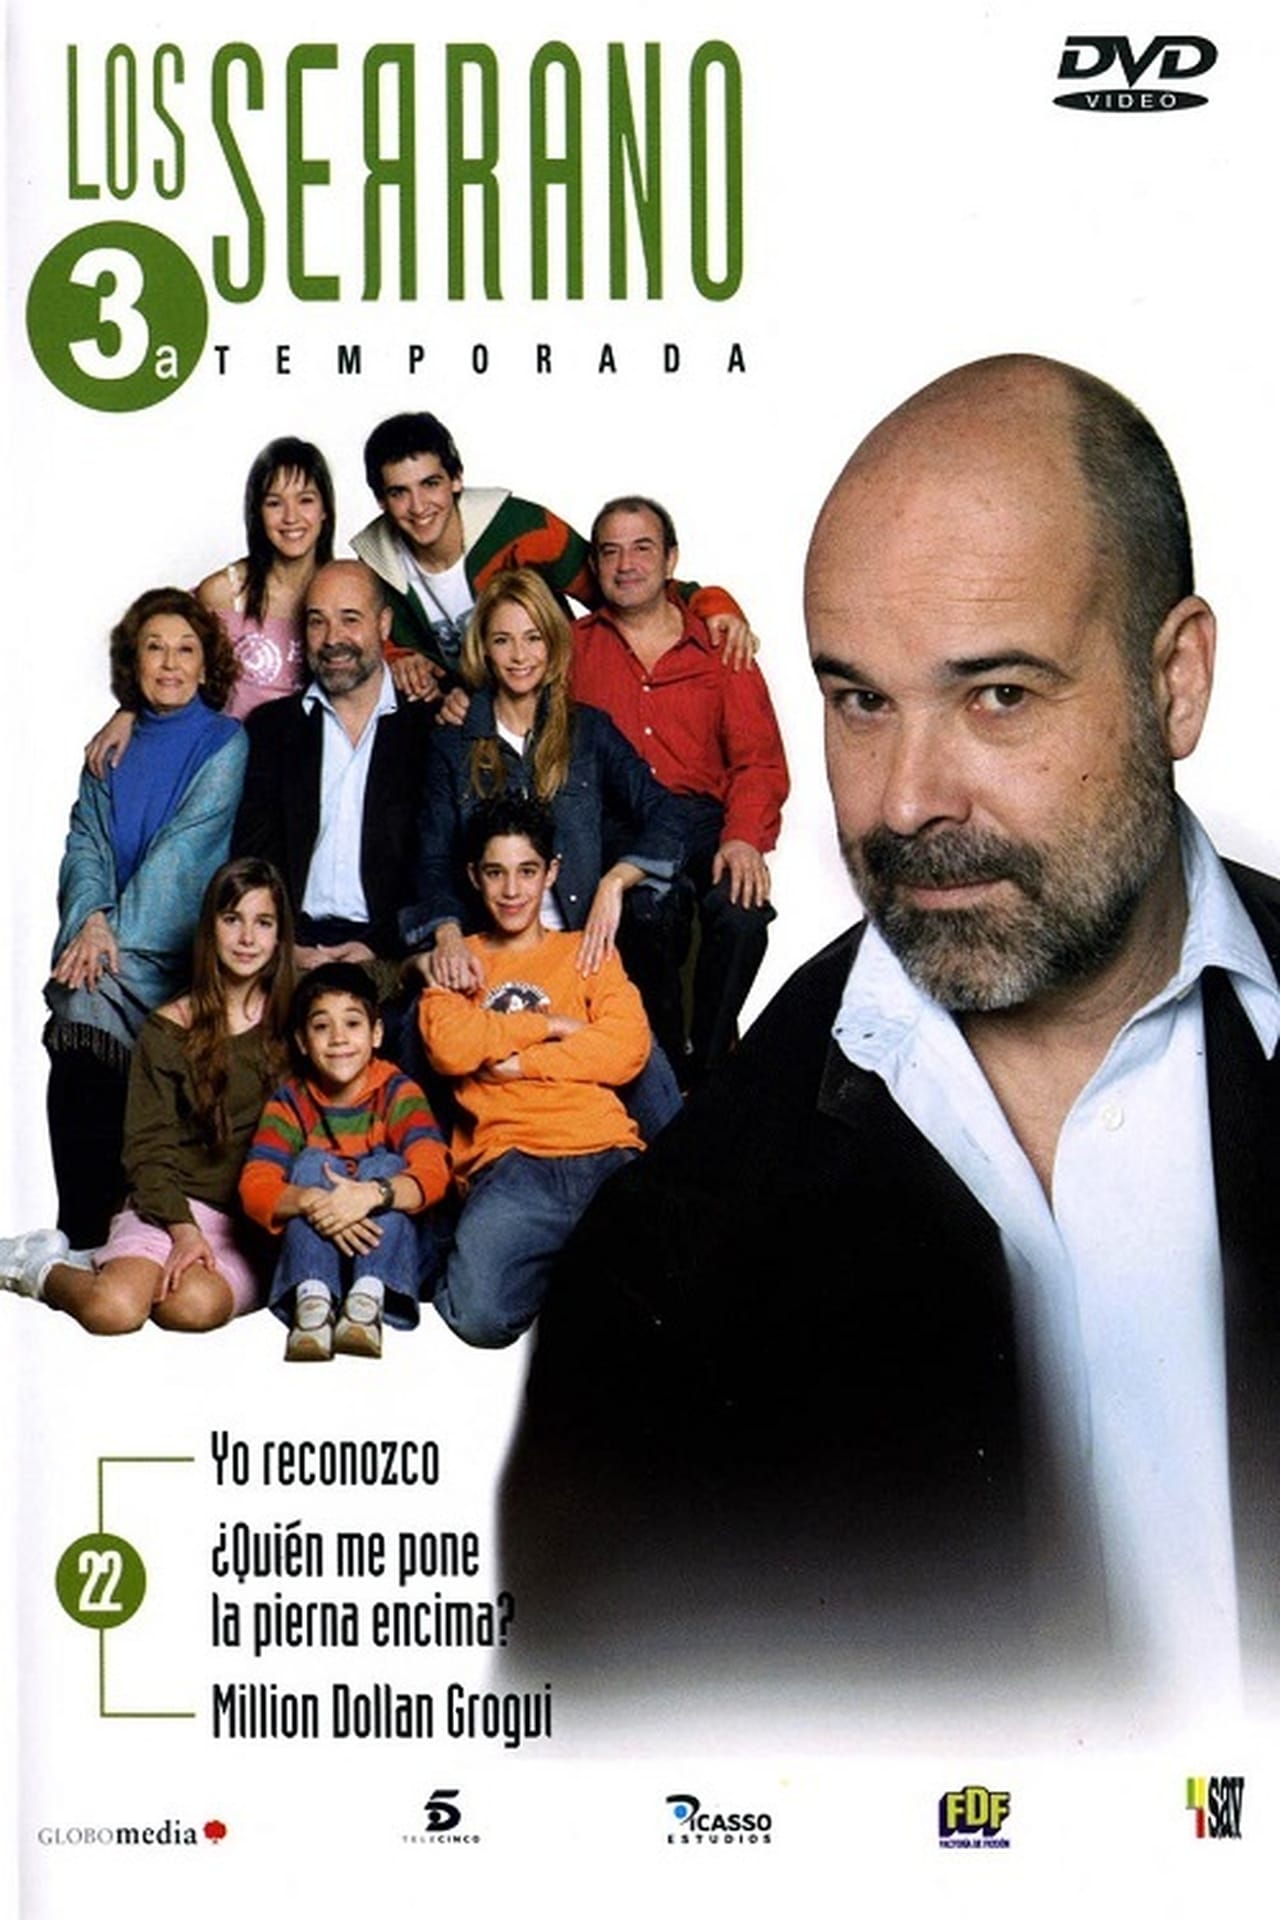 Los Serrano Season 3